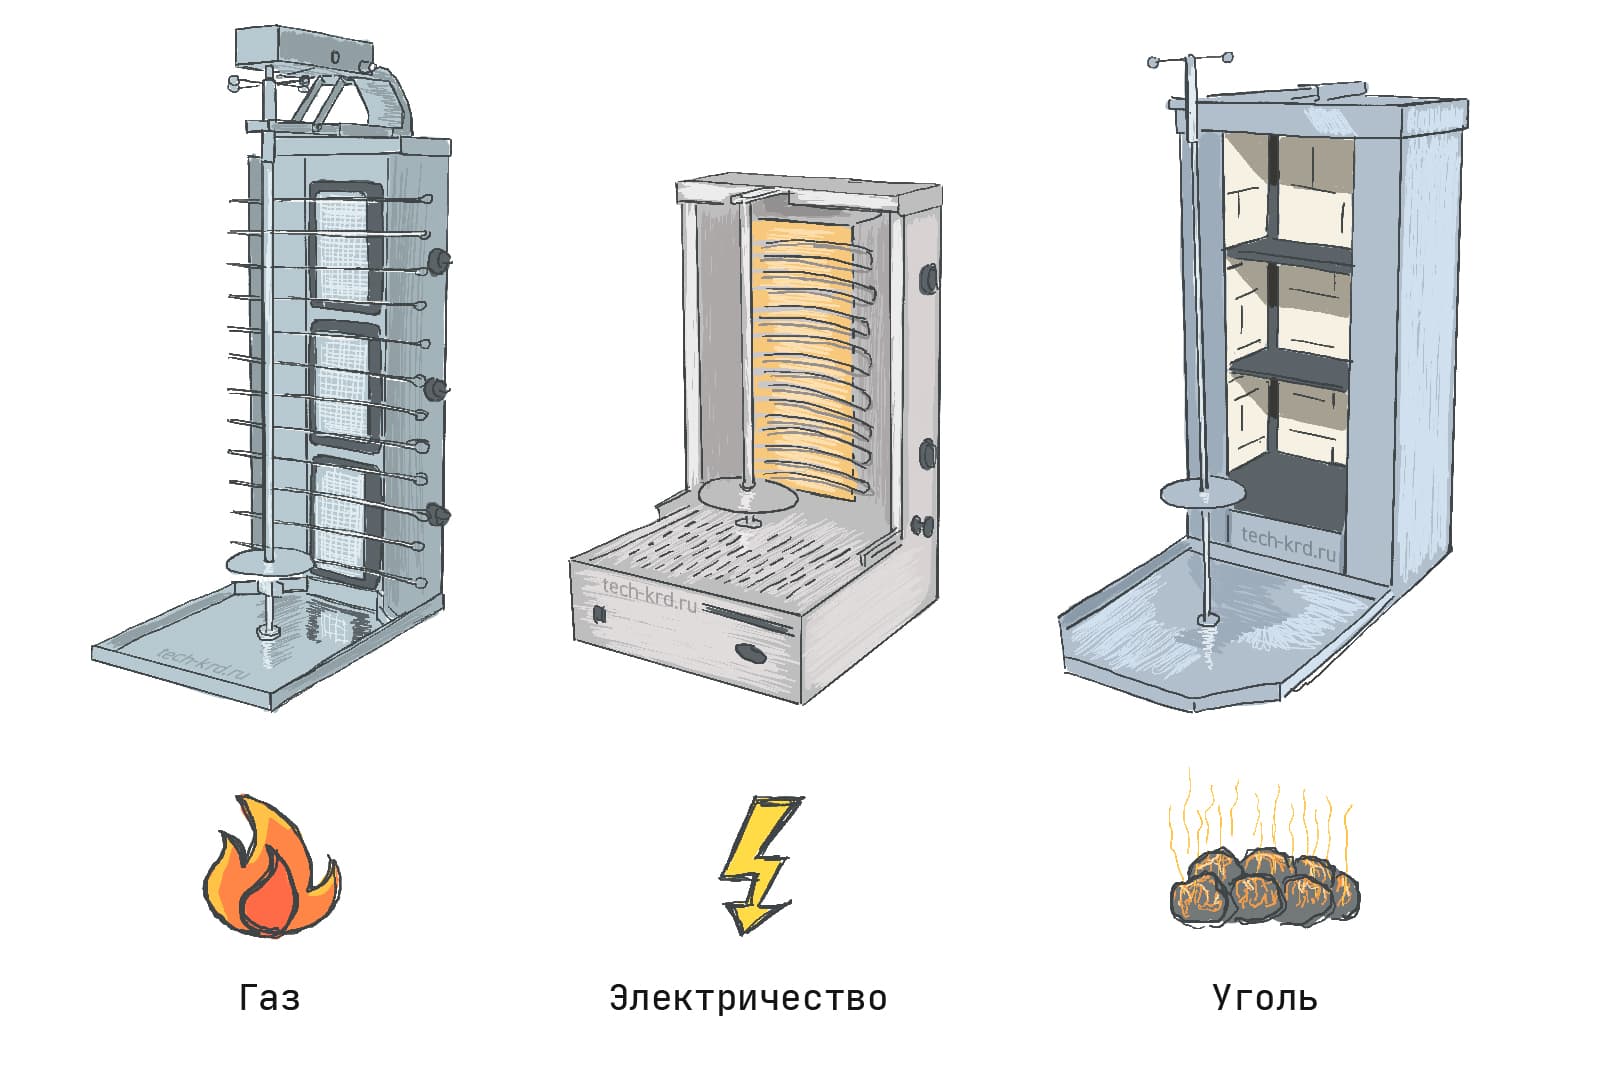 Аппараты для шаурмы с разными источниками питания: газ, электричество, уголь